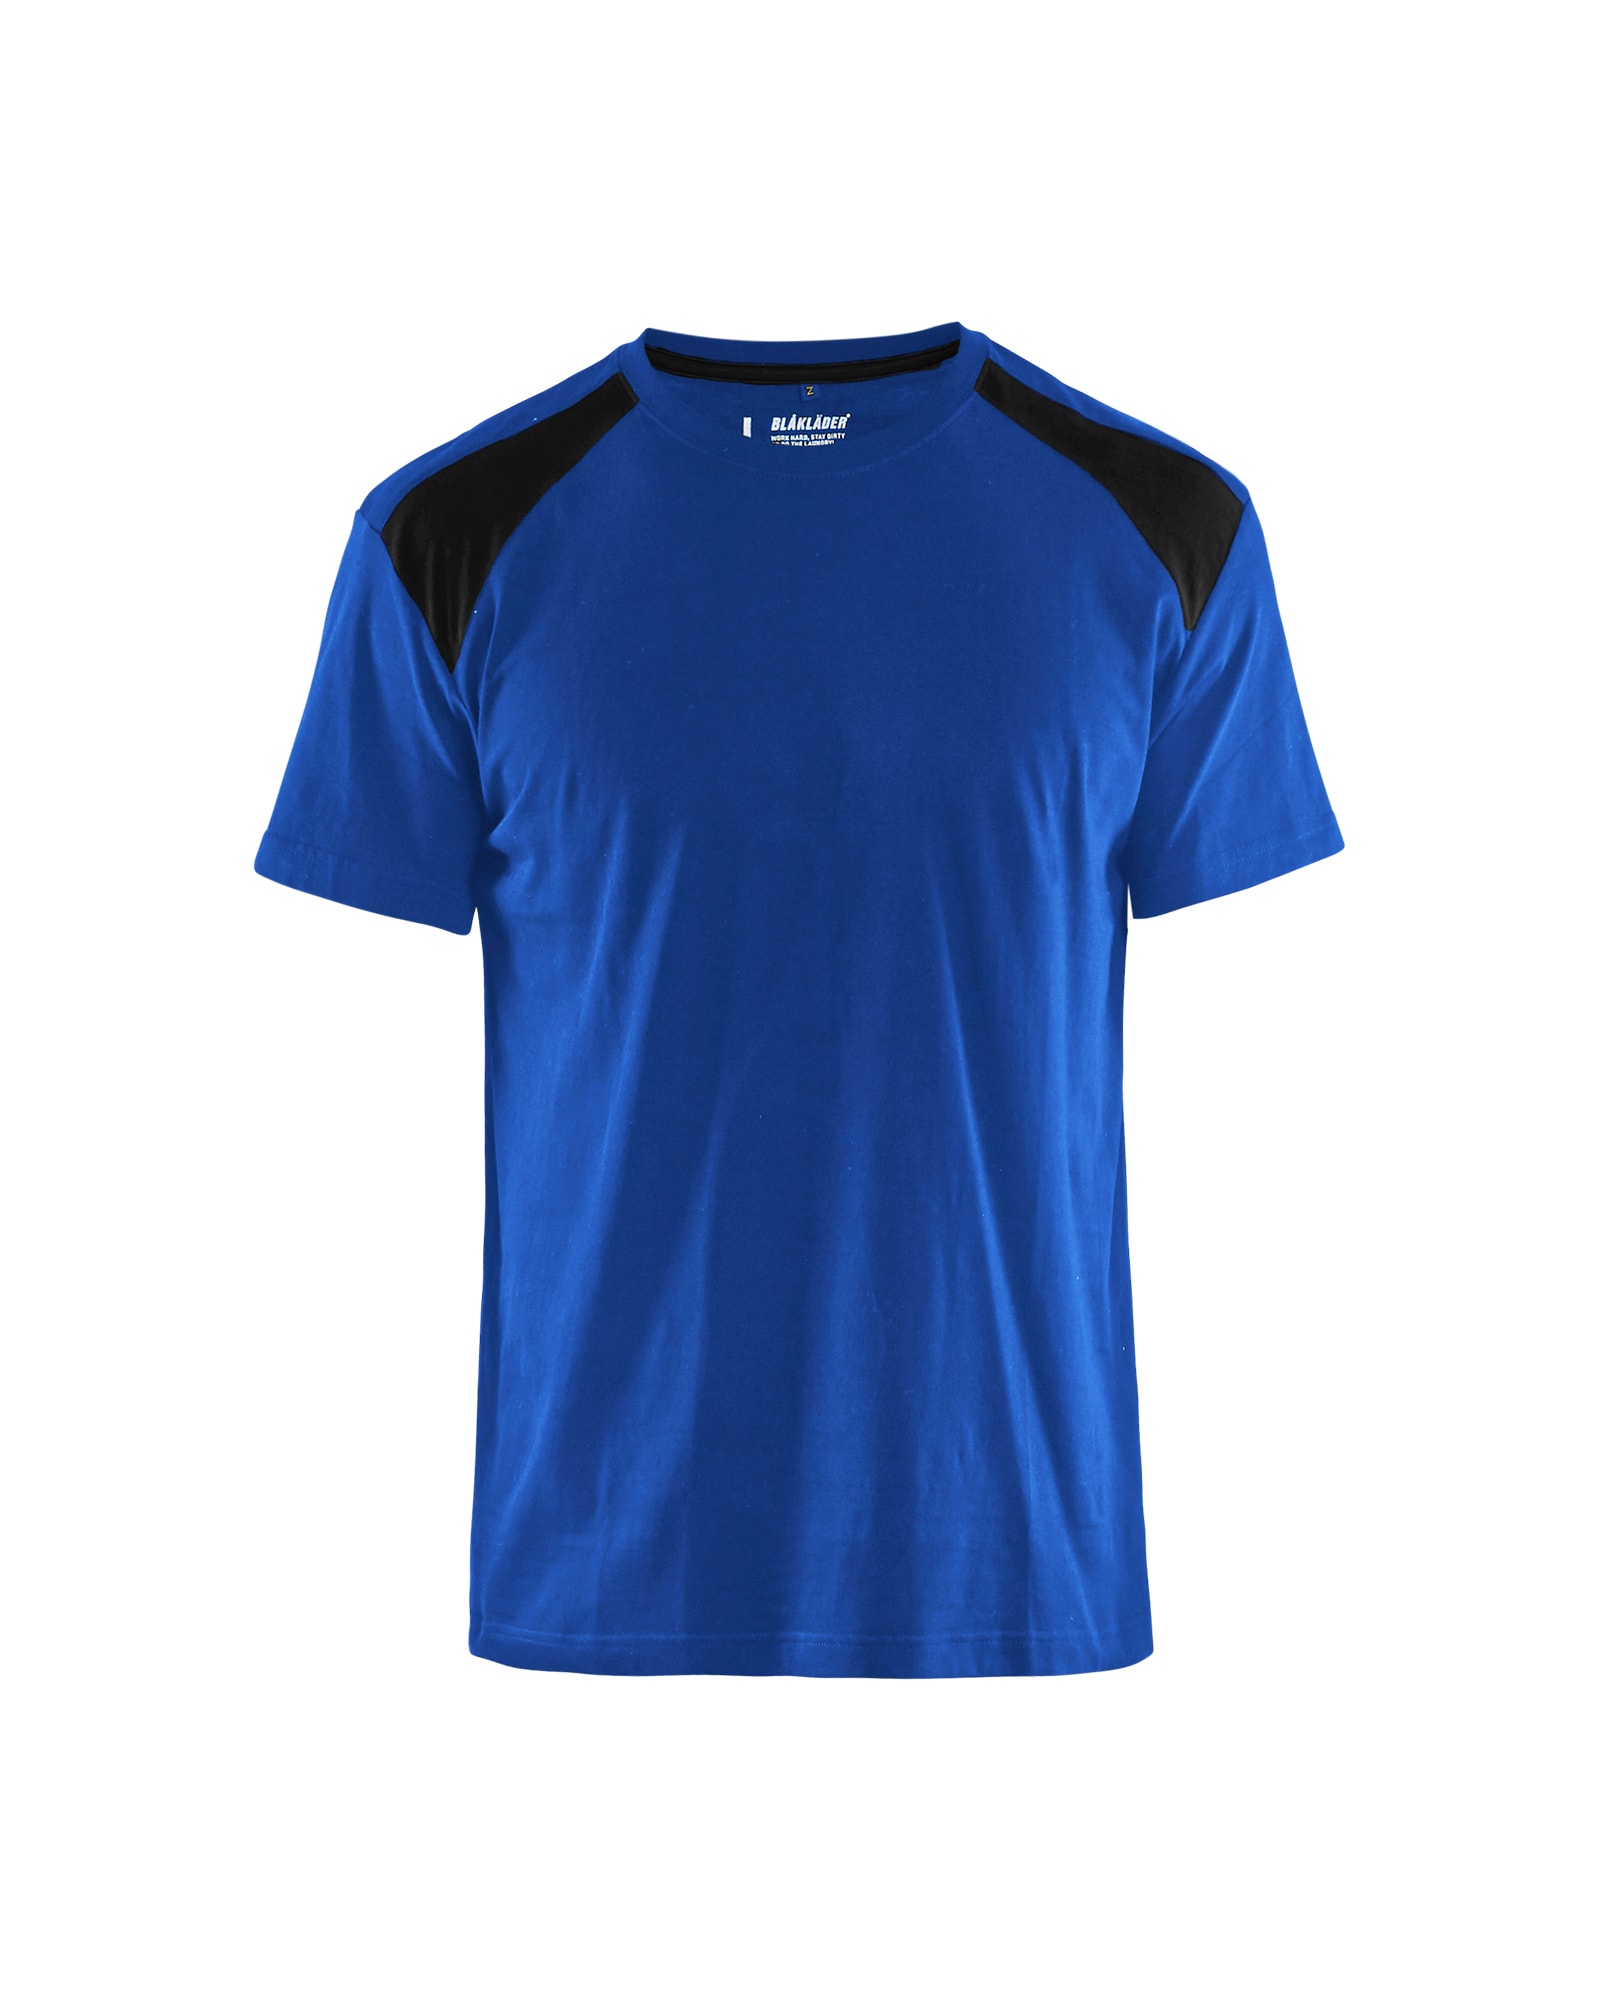 3379 1042 Blakläder T-Shirt, in 14 Farbkombinationen erhältlich, Kollektion UNITE (Auslaufender Artikel. Nur noch verfügbar solange der Vorrat reicht).